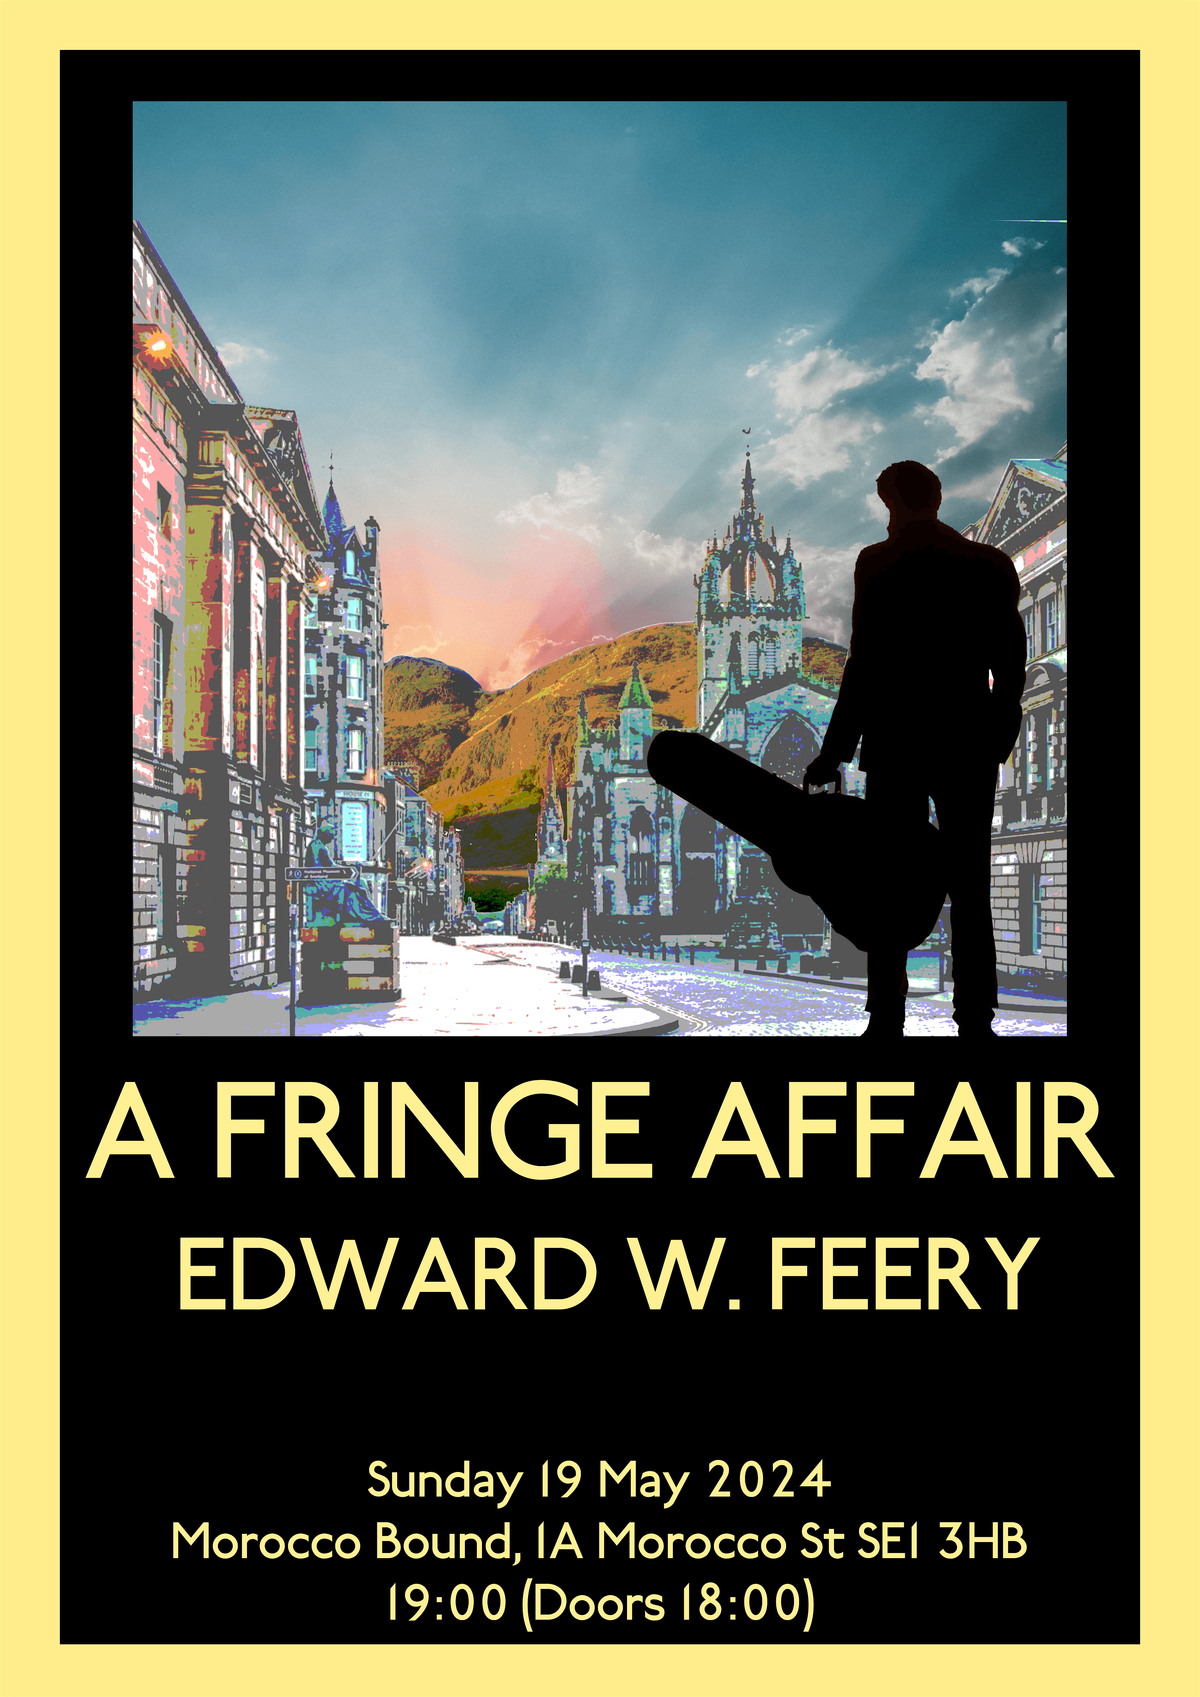 A Fringe Affair by Edward W. Feery